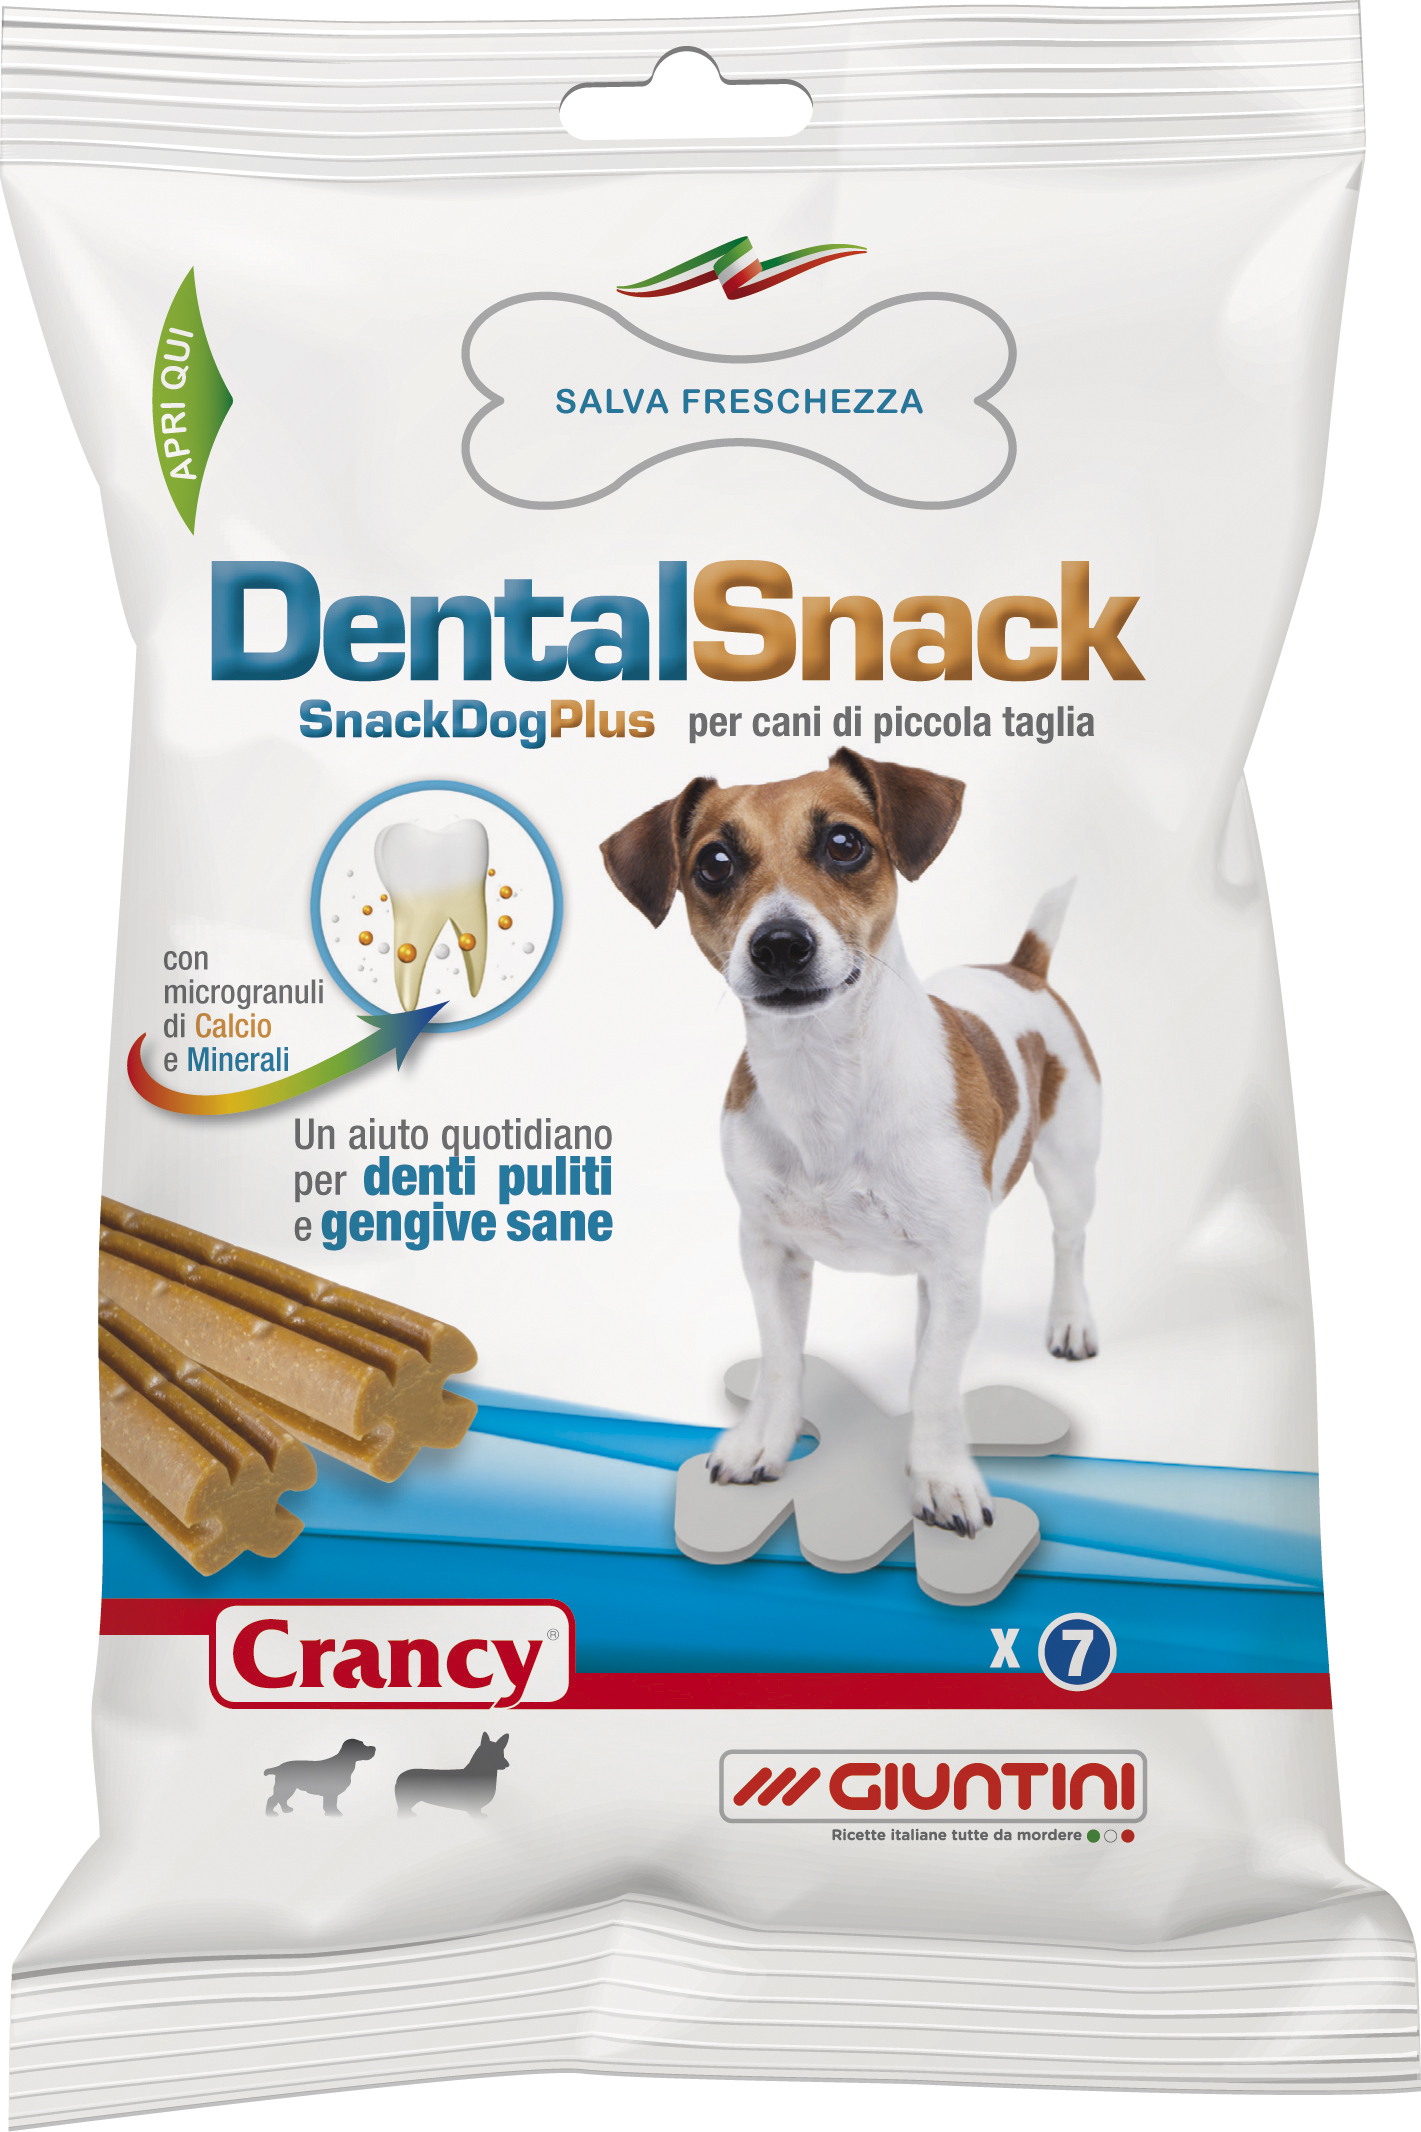 Crancy Dental Snack per cani di piccola taglia (1 x 25 bustine) - 37.53€ :  ciotolefelici, Vendita online prodotti per animali